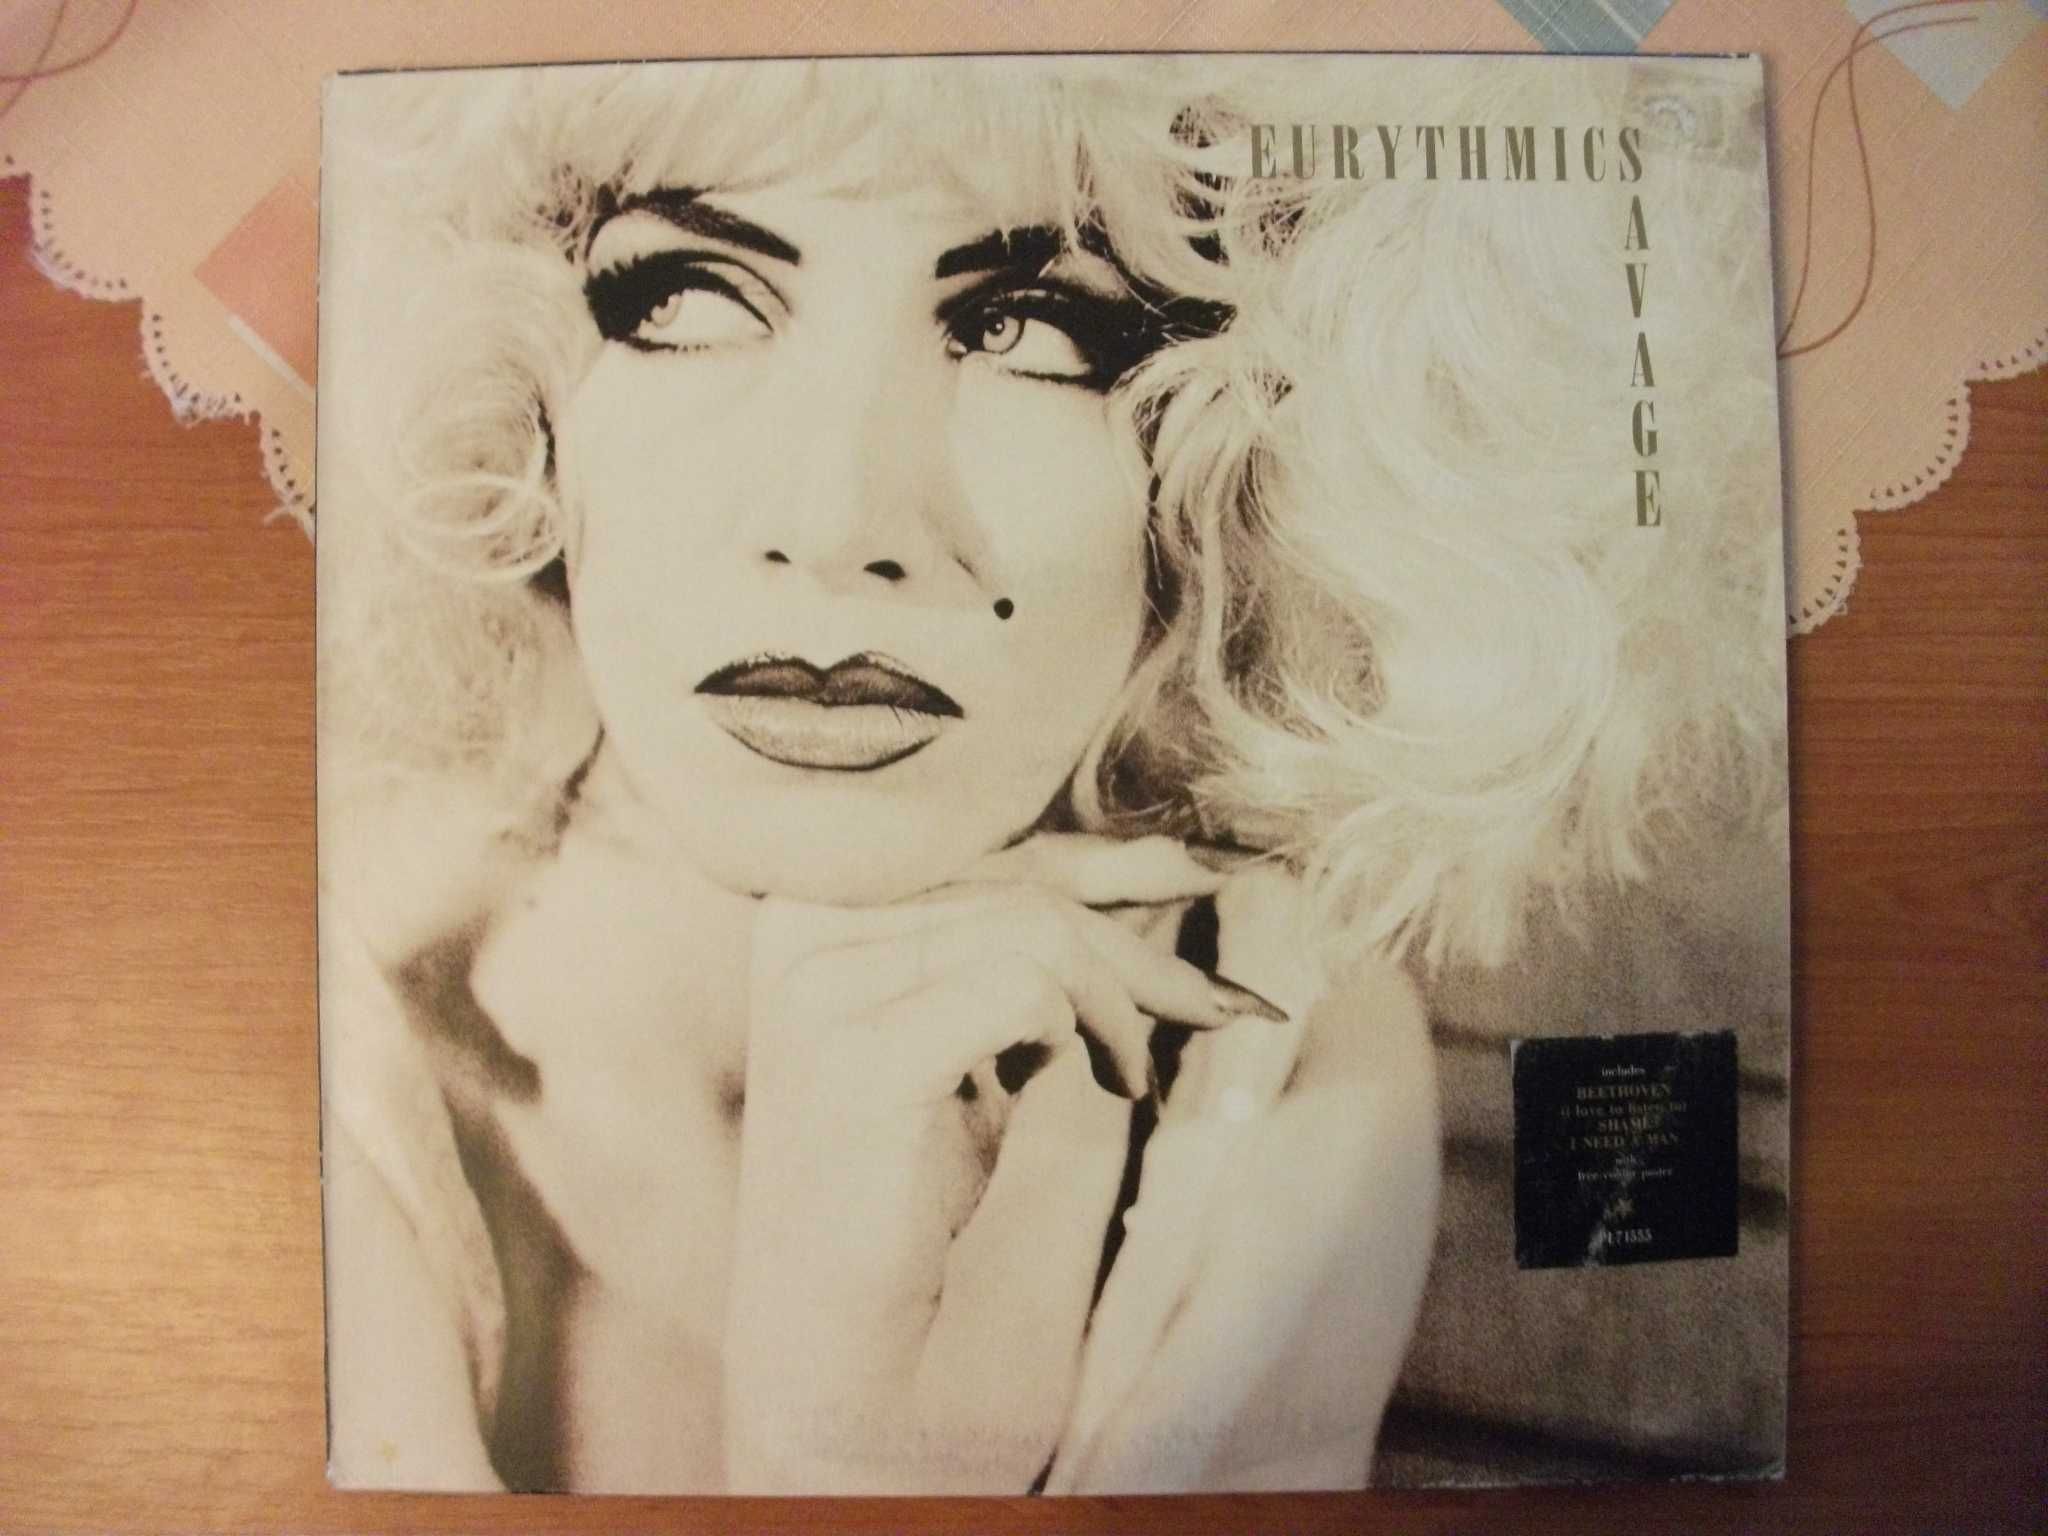 Eurythmics 1984, Eurythmics Savage, 2 LP